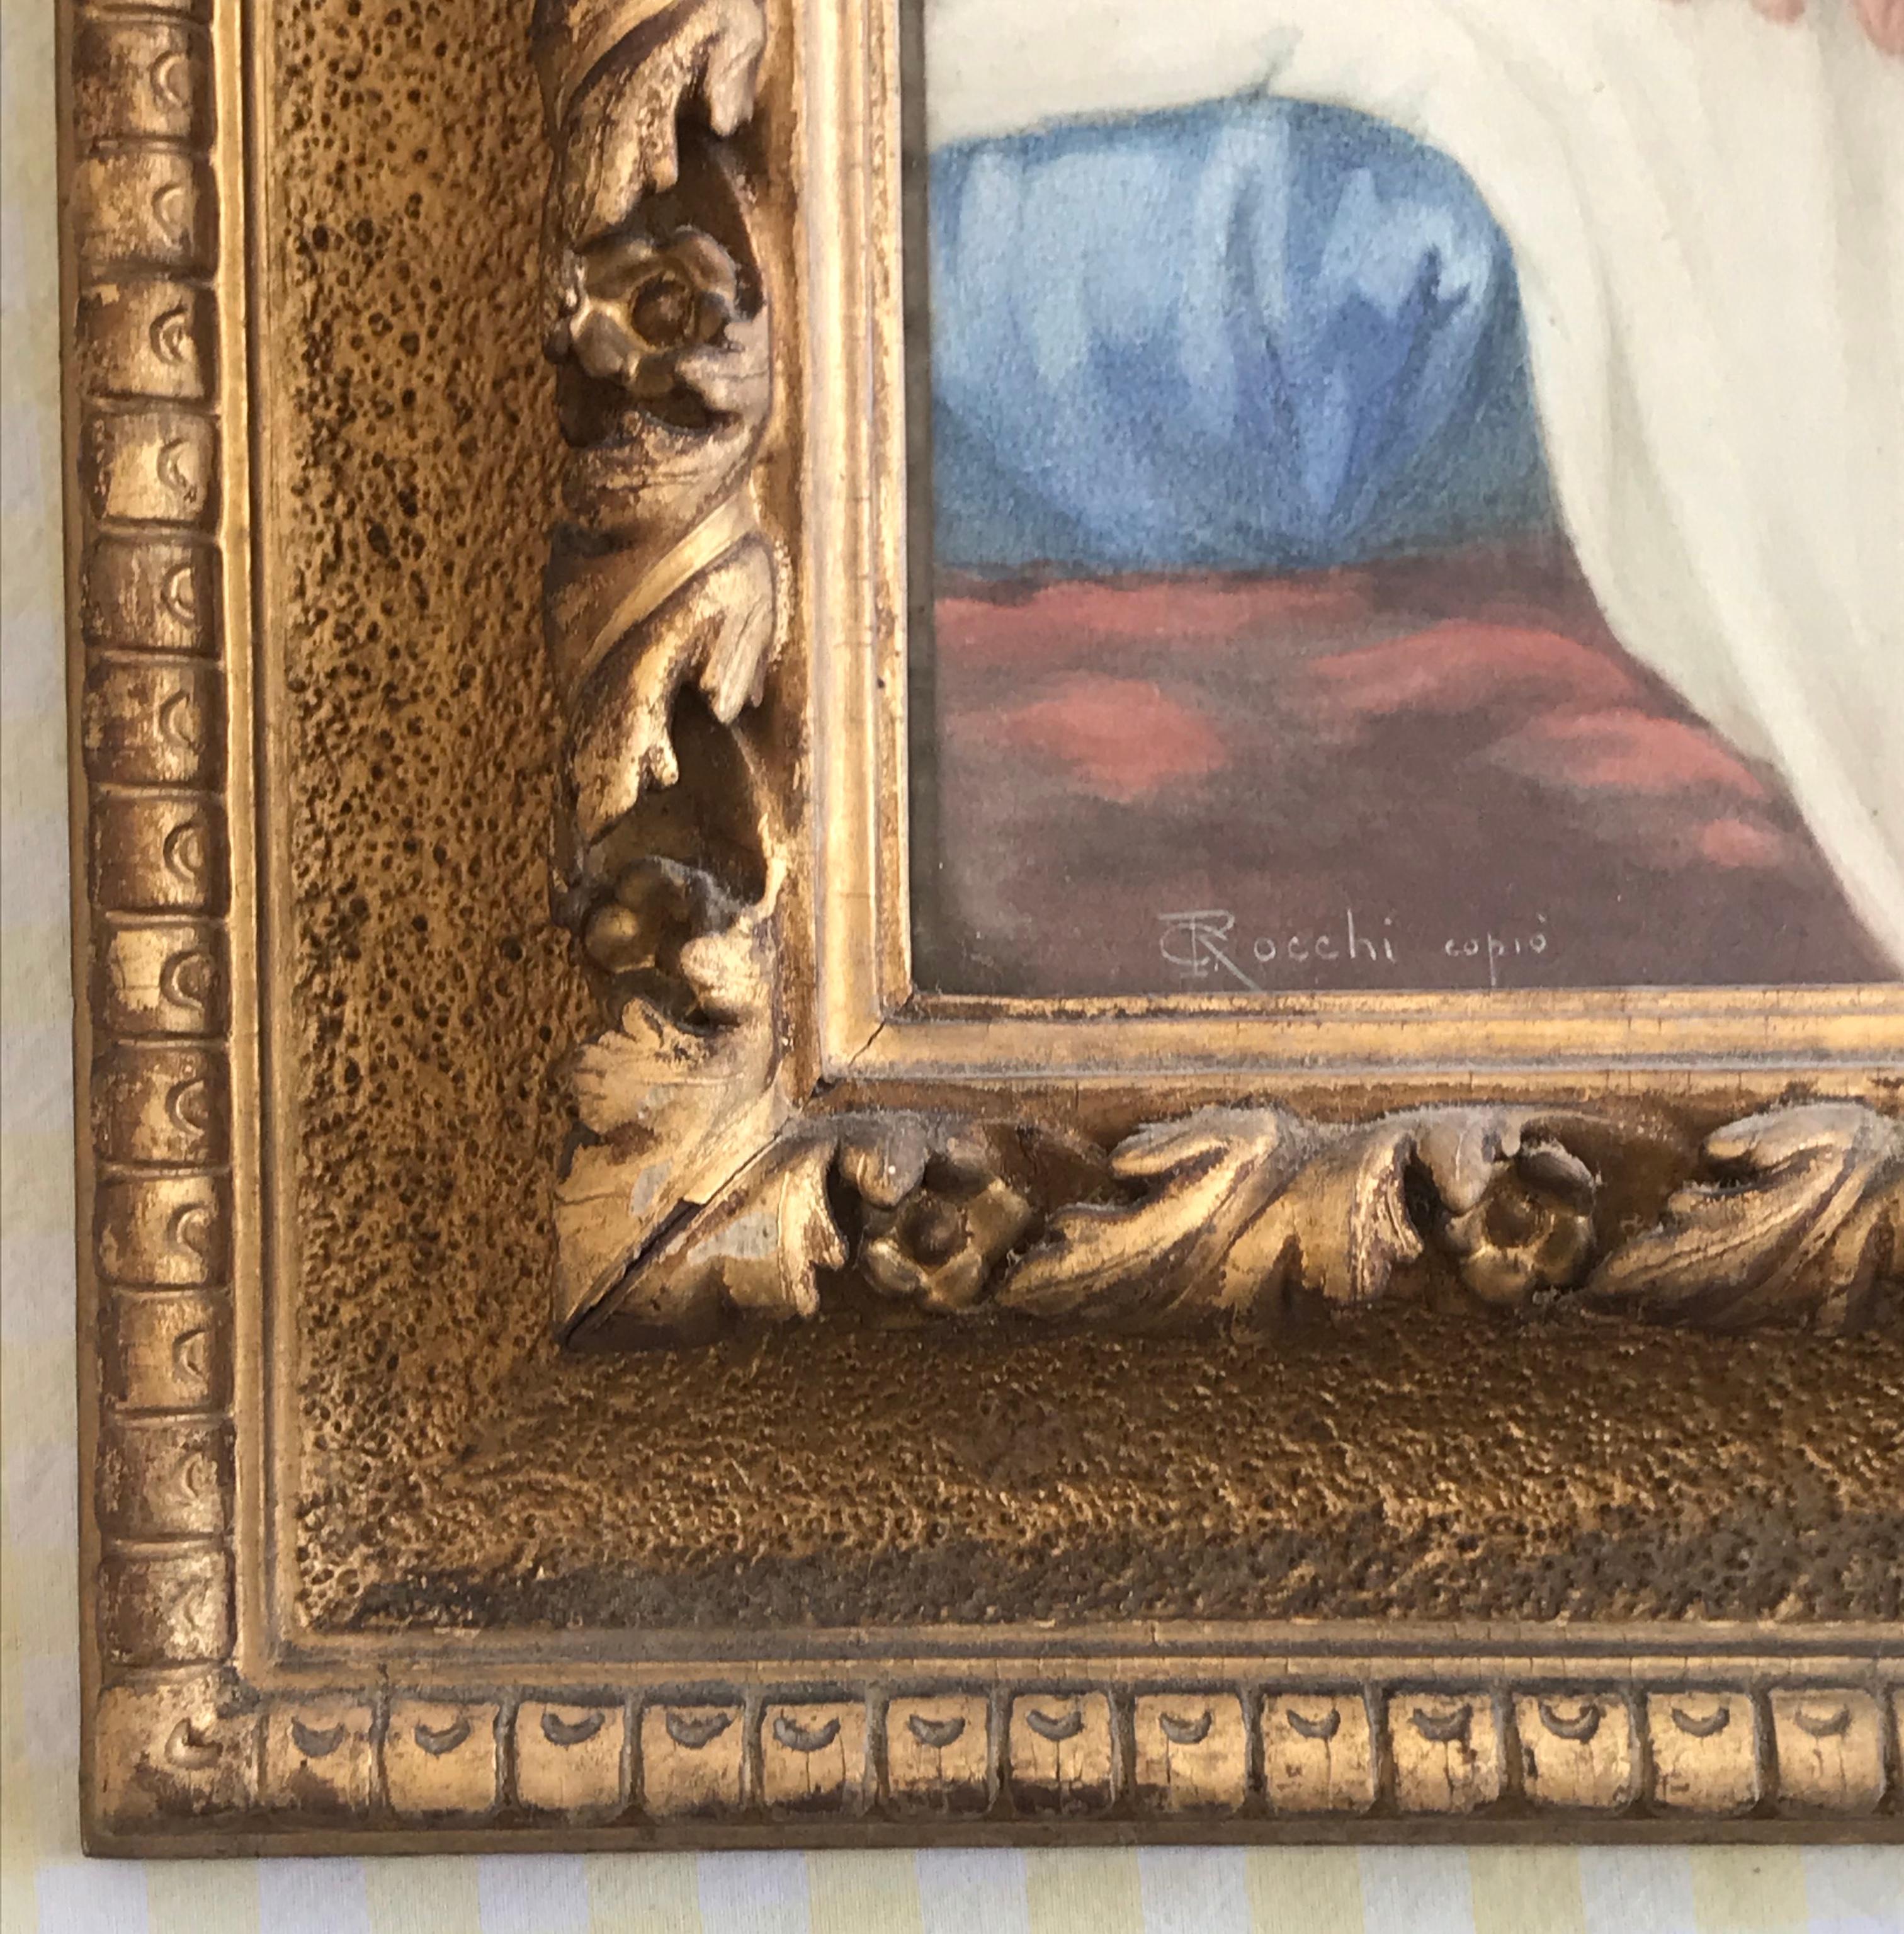 Eine schöne Kopie von Giuseppe Rocchi aus dem 19. Jahrhundert von Baldassarre Franceschinis Schlafendem Amor, präsentiert in einem sehr attraktiven vergoldeten Rahmen mit handgeschnitzten Leisten. Ein sehr friedliches Bild, ideal für ein Wohn- oder